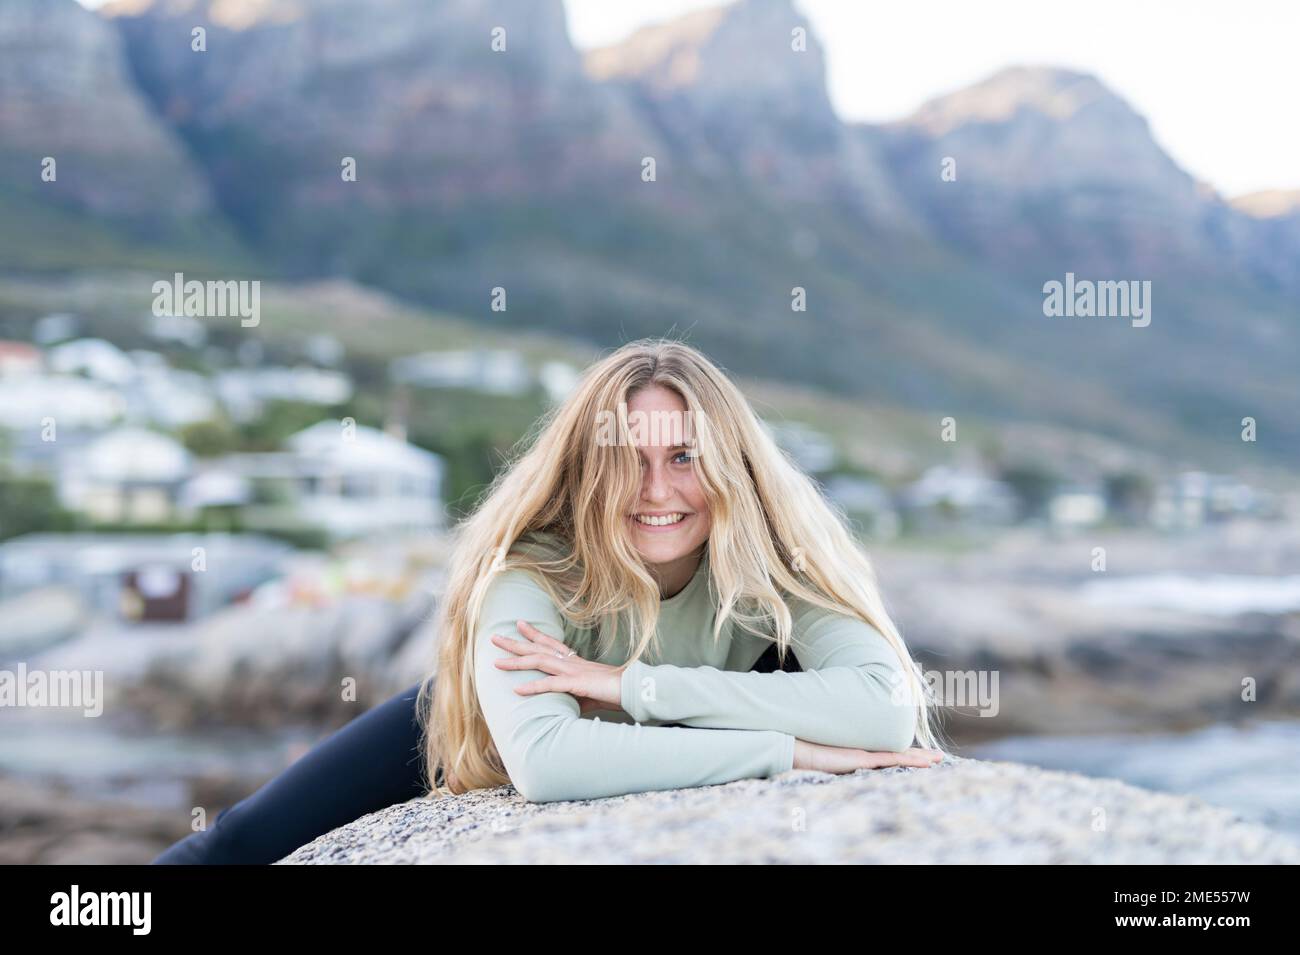 Lächelnde junge Frau mit blonden Haaren, die auf einem Stein lag Stockfoto